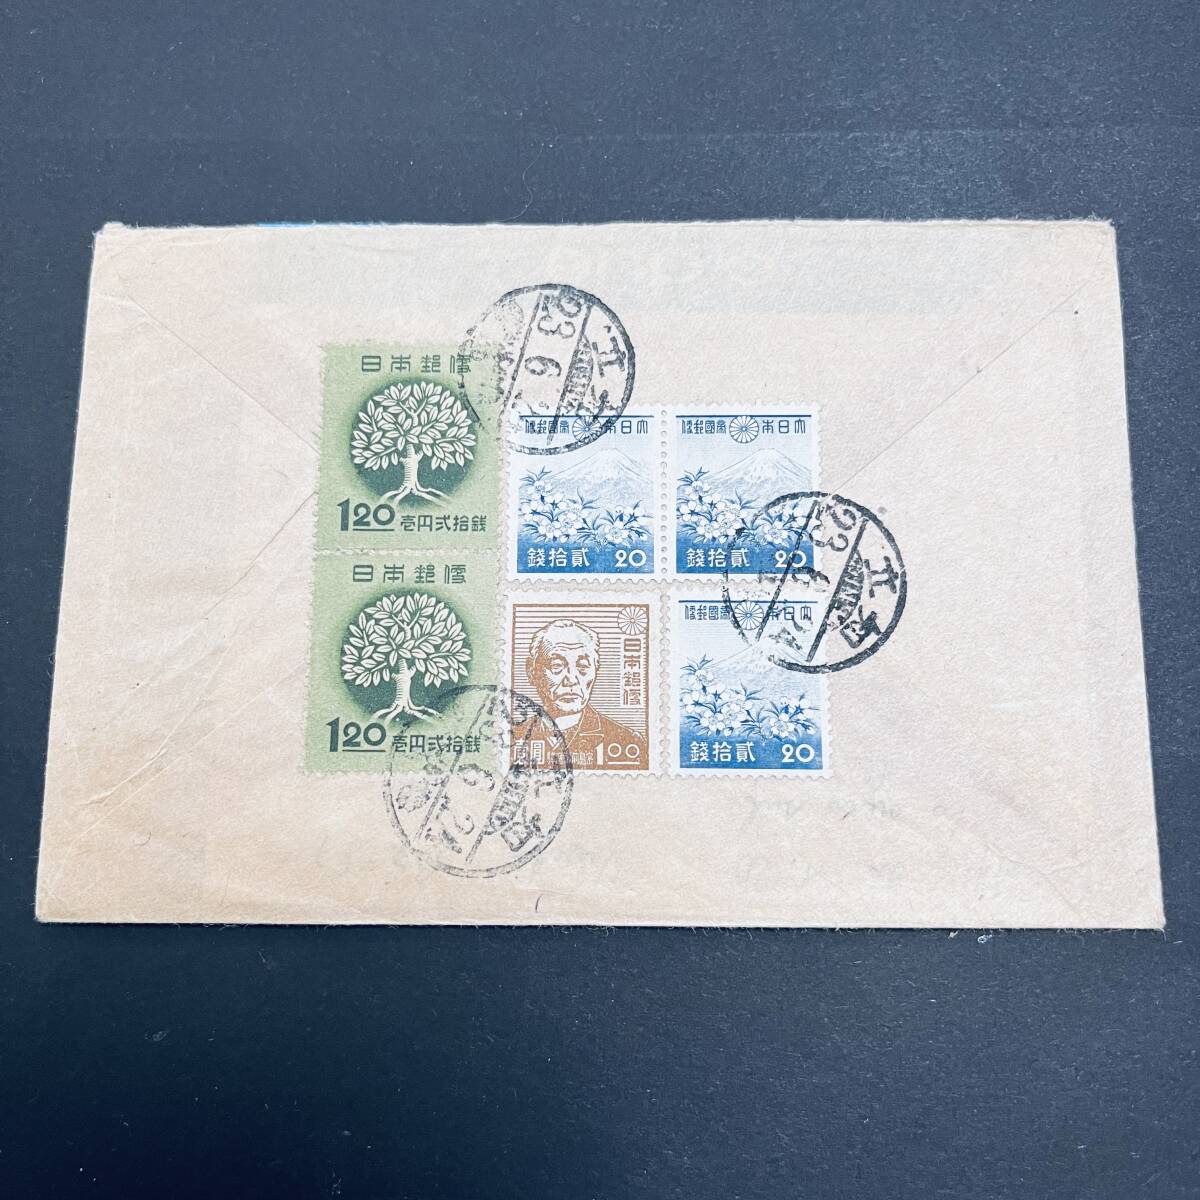 1948年 米国宛外信書状使用例 一次昭和20銭、全国緑化1円20銭2枚ほか加貼 櫛型 知立 エンタイアの画像1